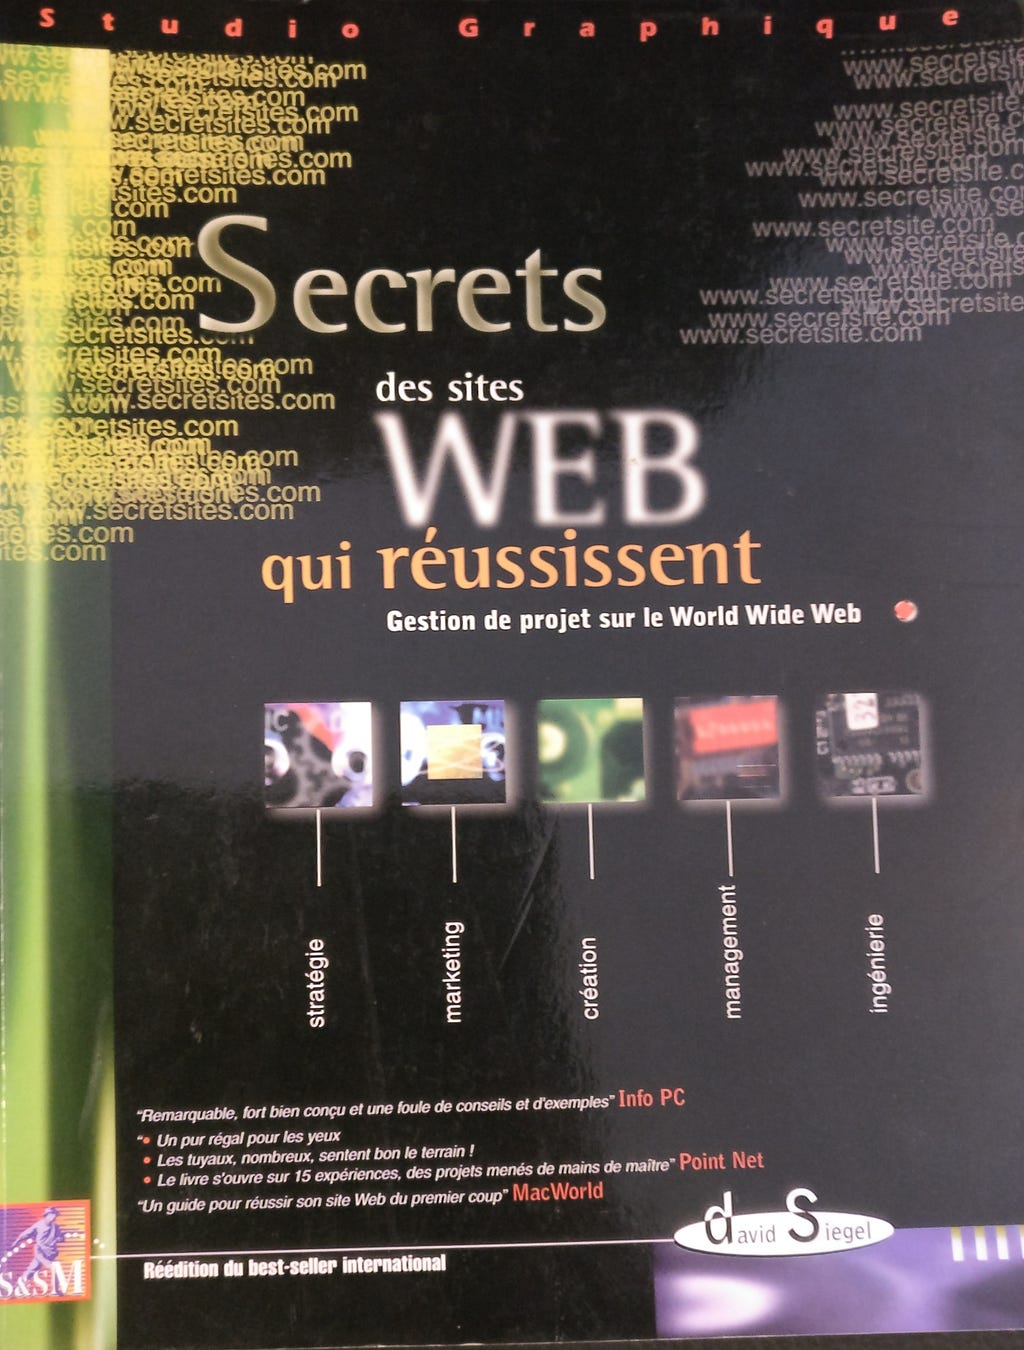 Photo du livre de David Siegel : “Secret des sites web qui réussissent”